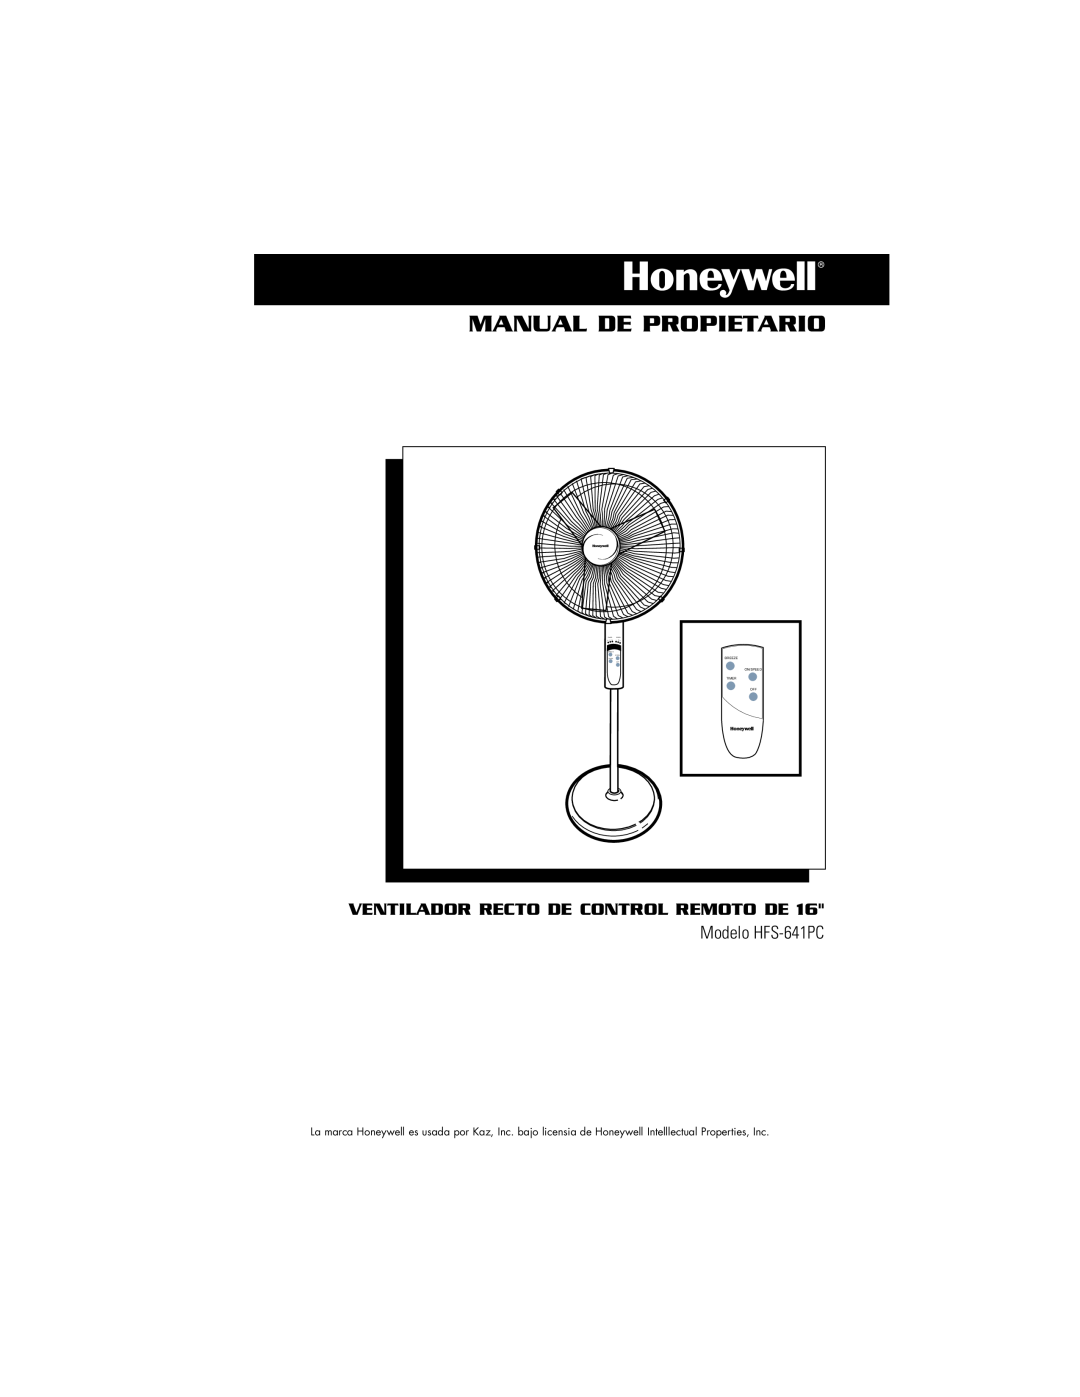 Vicks Manual De Propietario, Ventilador Recto De Control Remoto De, Modelo HFS-641PC, Breeze On/Speed Timer Off 